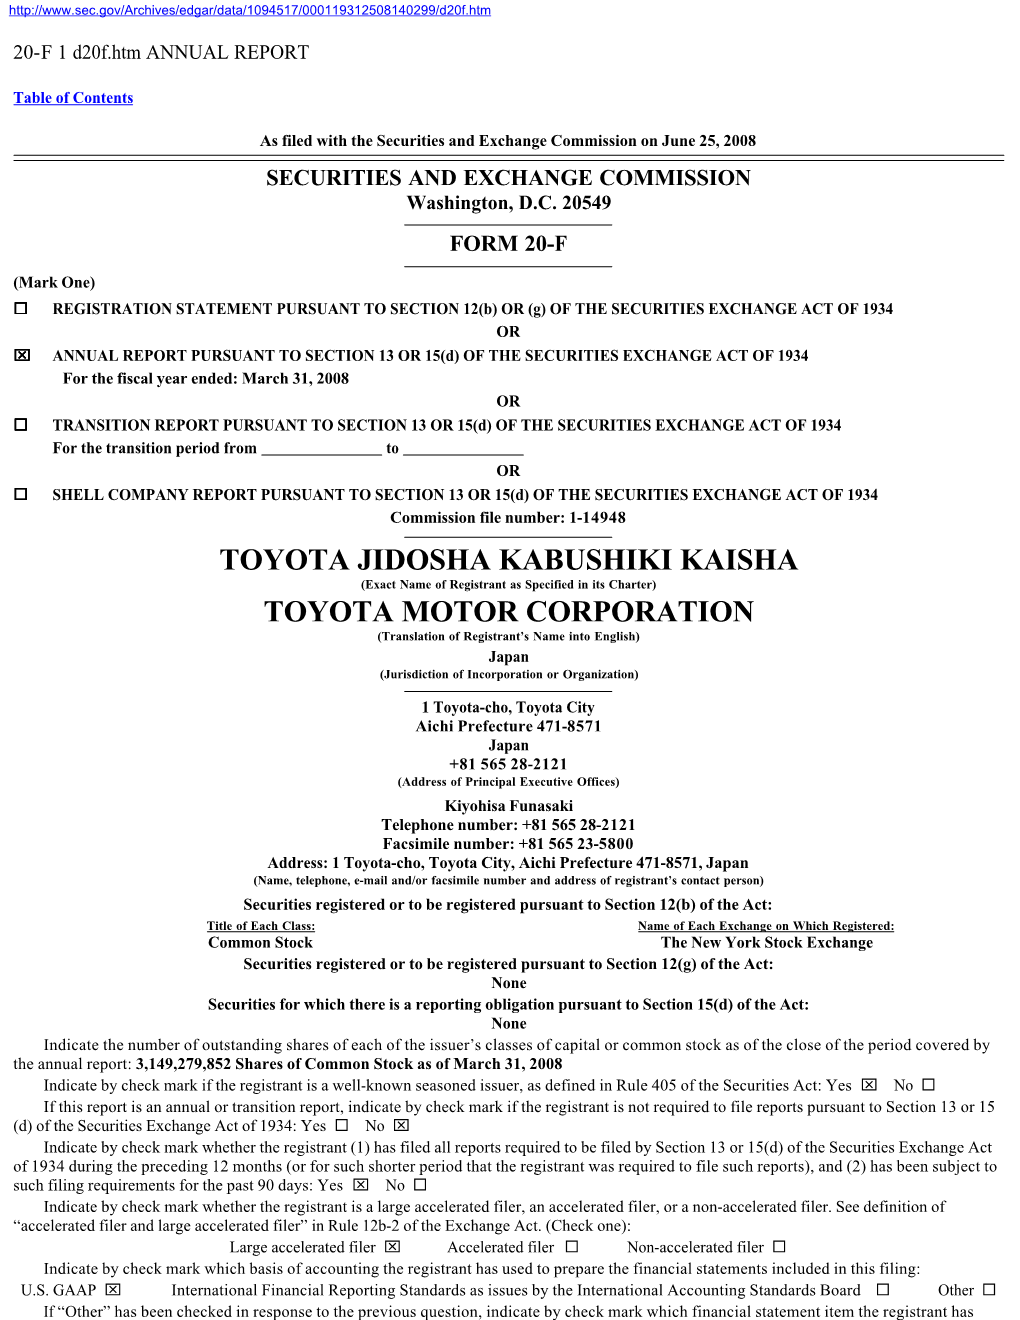 Toyota Jidosha Kabushiki Kaisha Toyota Motor